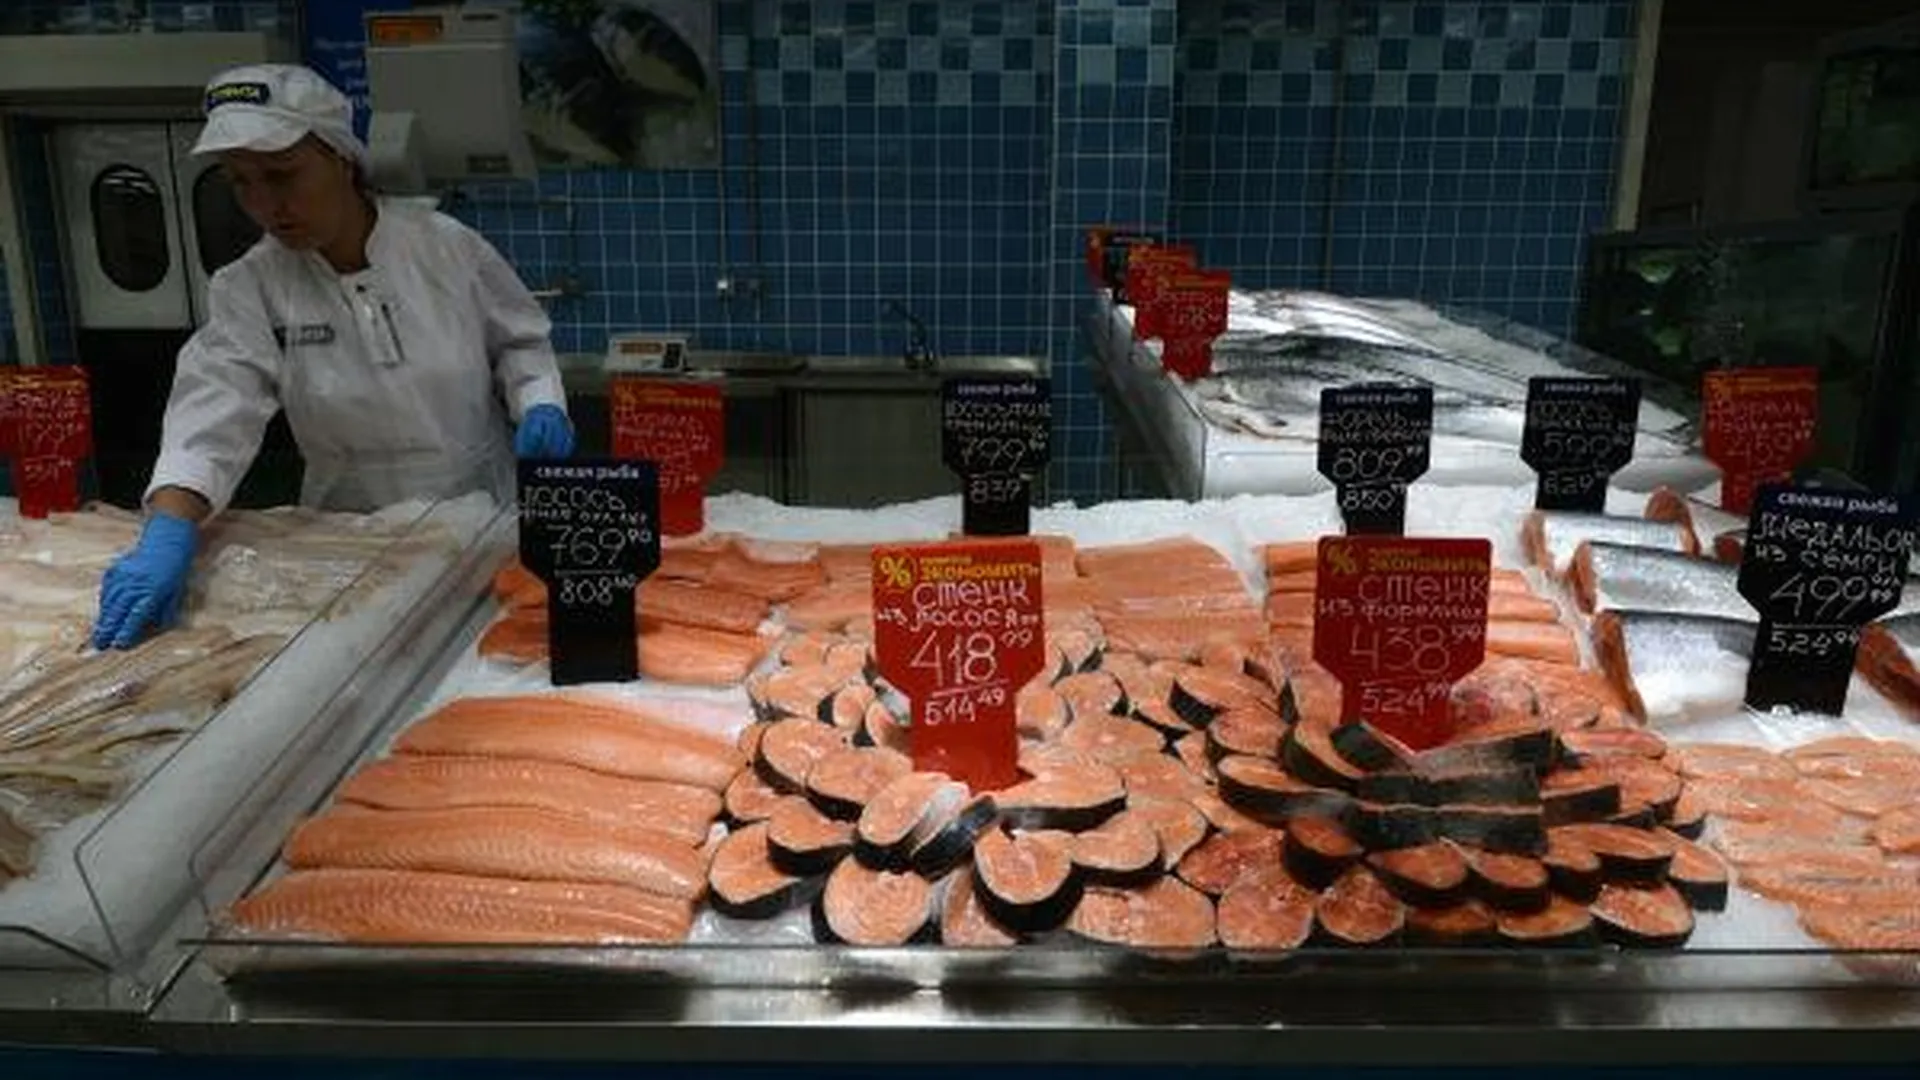 Жители области едят рыбы на 7,5 кг больше, чем в среднем по России